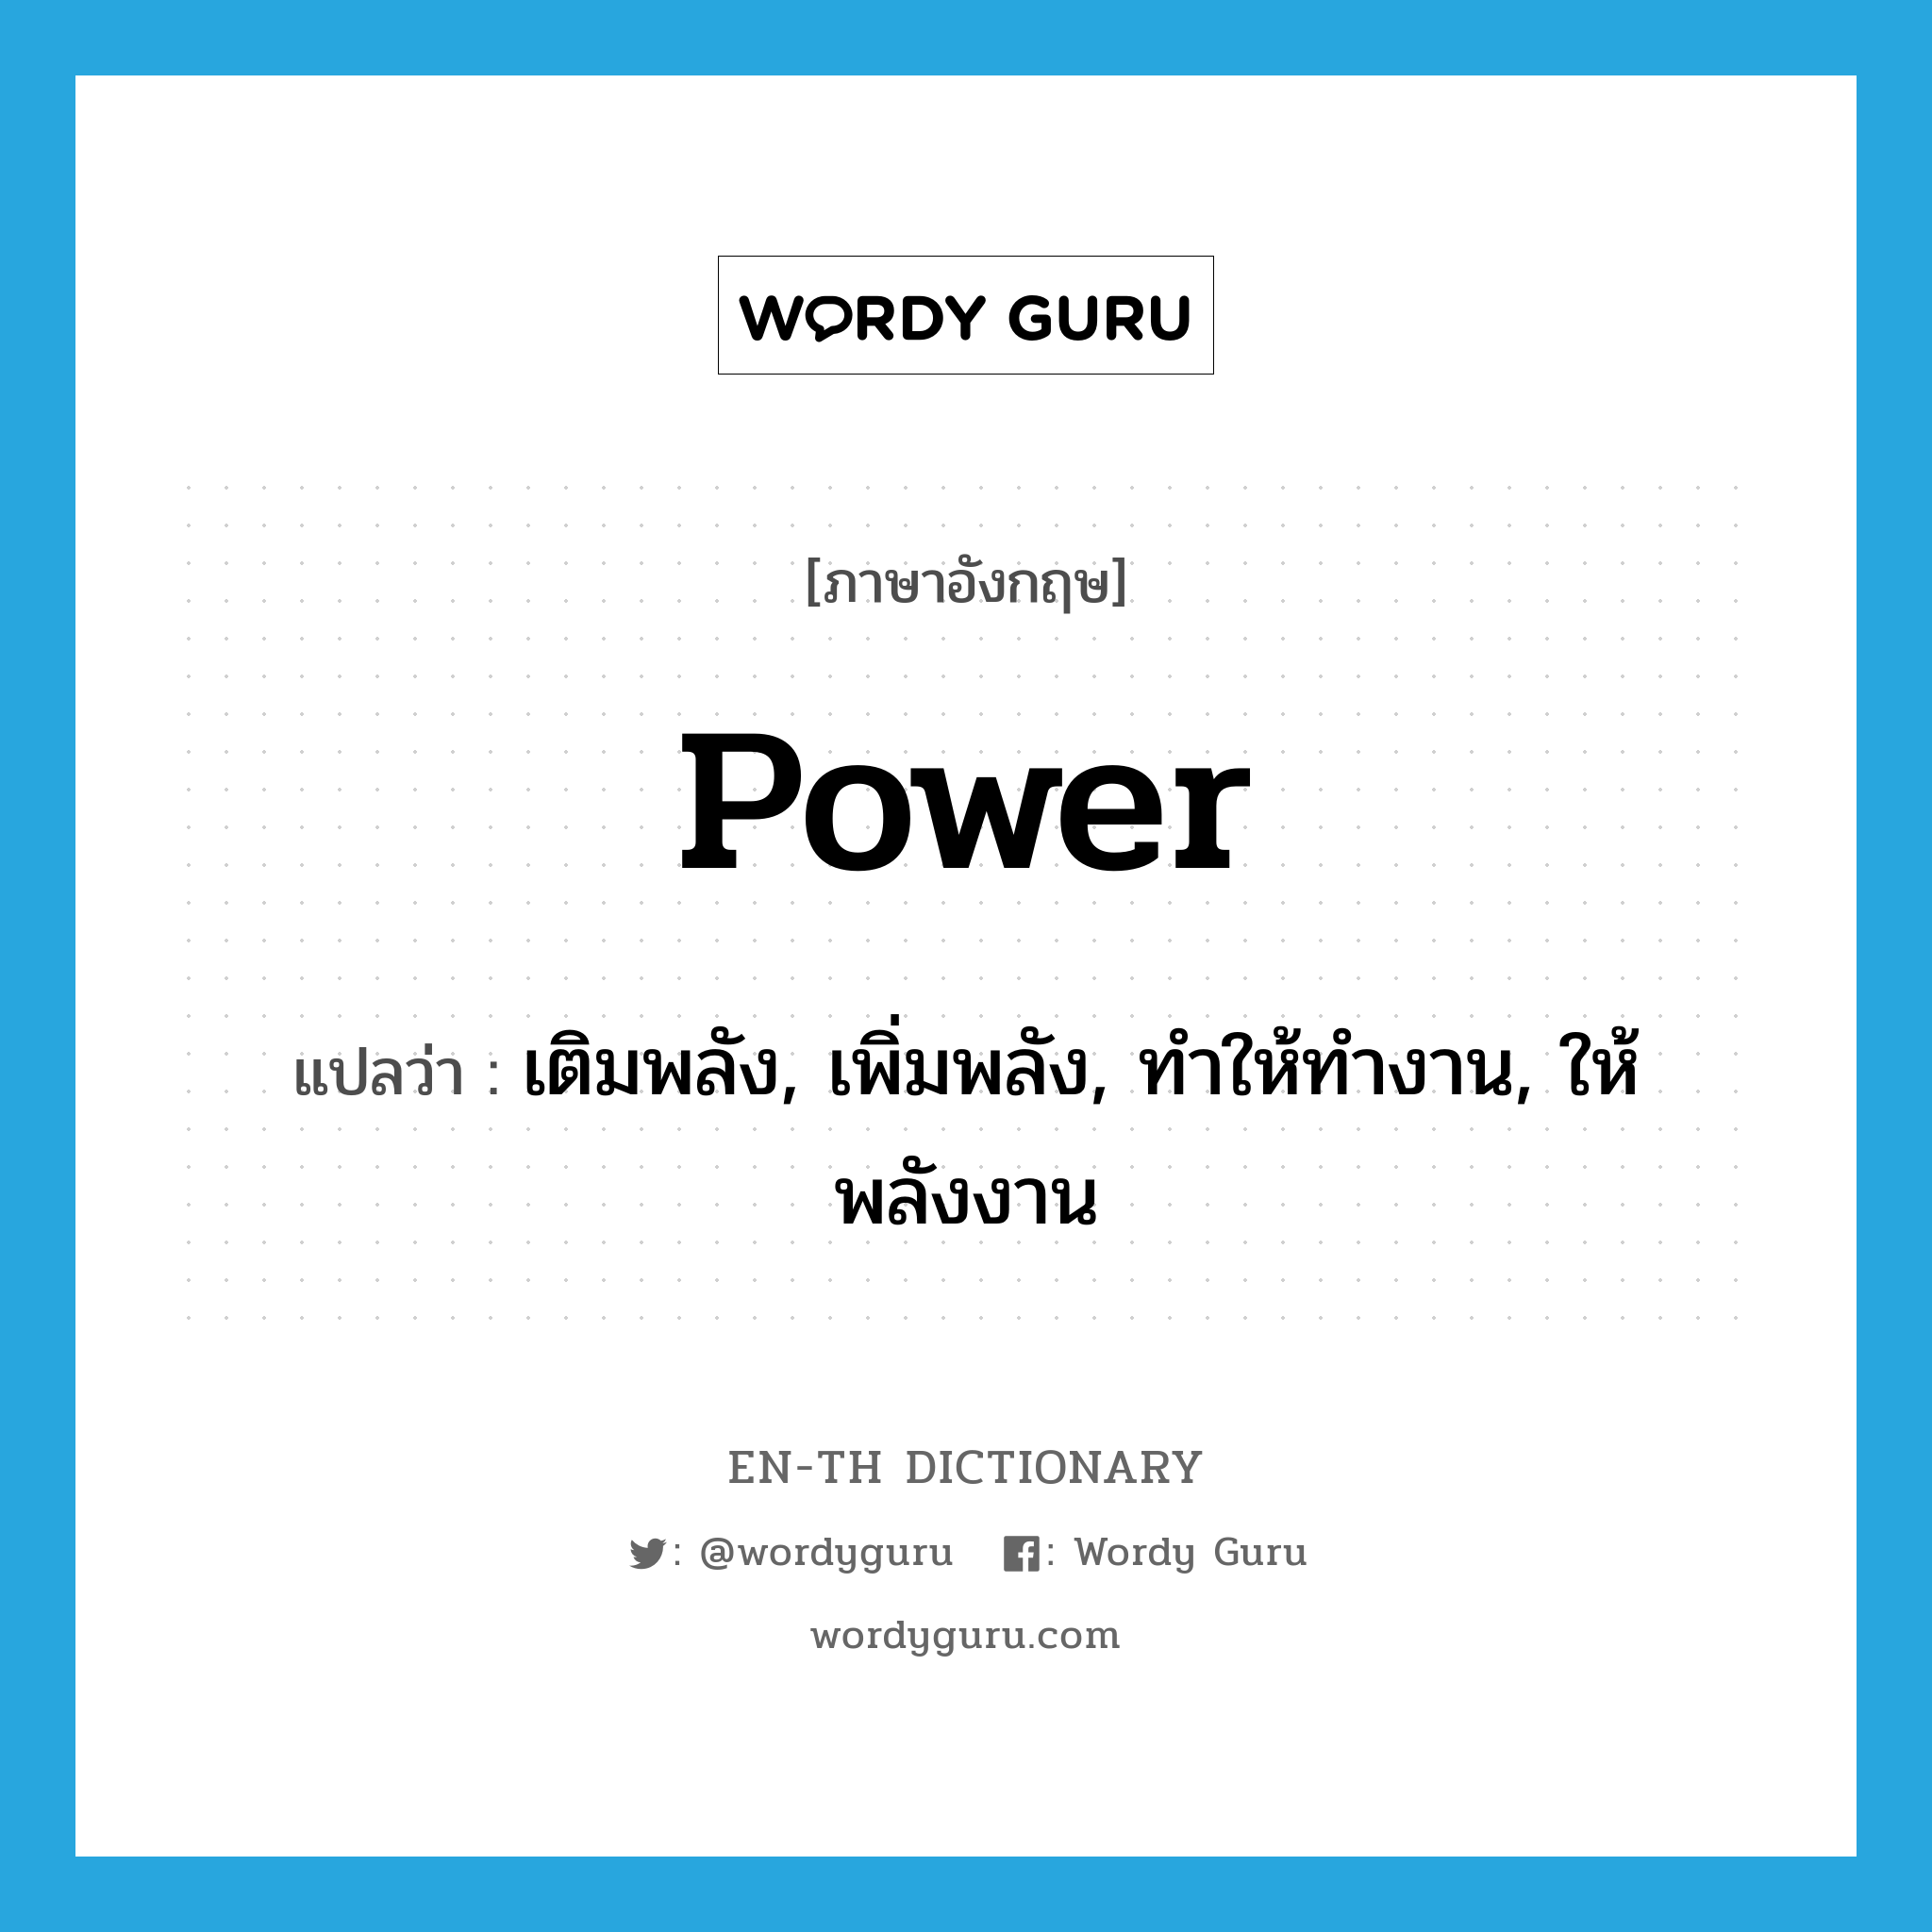 เติมพลัง, เพิ่มพลัง, ทำให้ทำงาน, ให้พลังงาน ภาษาอังกฤษ?, คำศัพท์ภาษาอังกฤษ เติมพลัง, เพิ่มพลัง, ทำให้ทำงาน, ให้พลังงาน แปลว่า power ประเภท VT หมวด VT